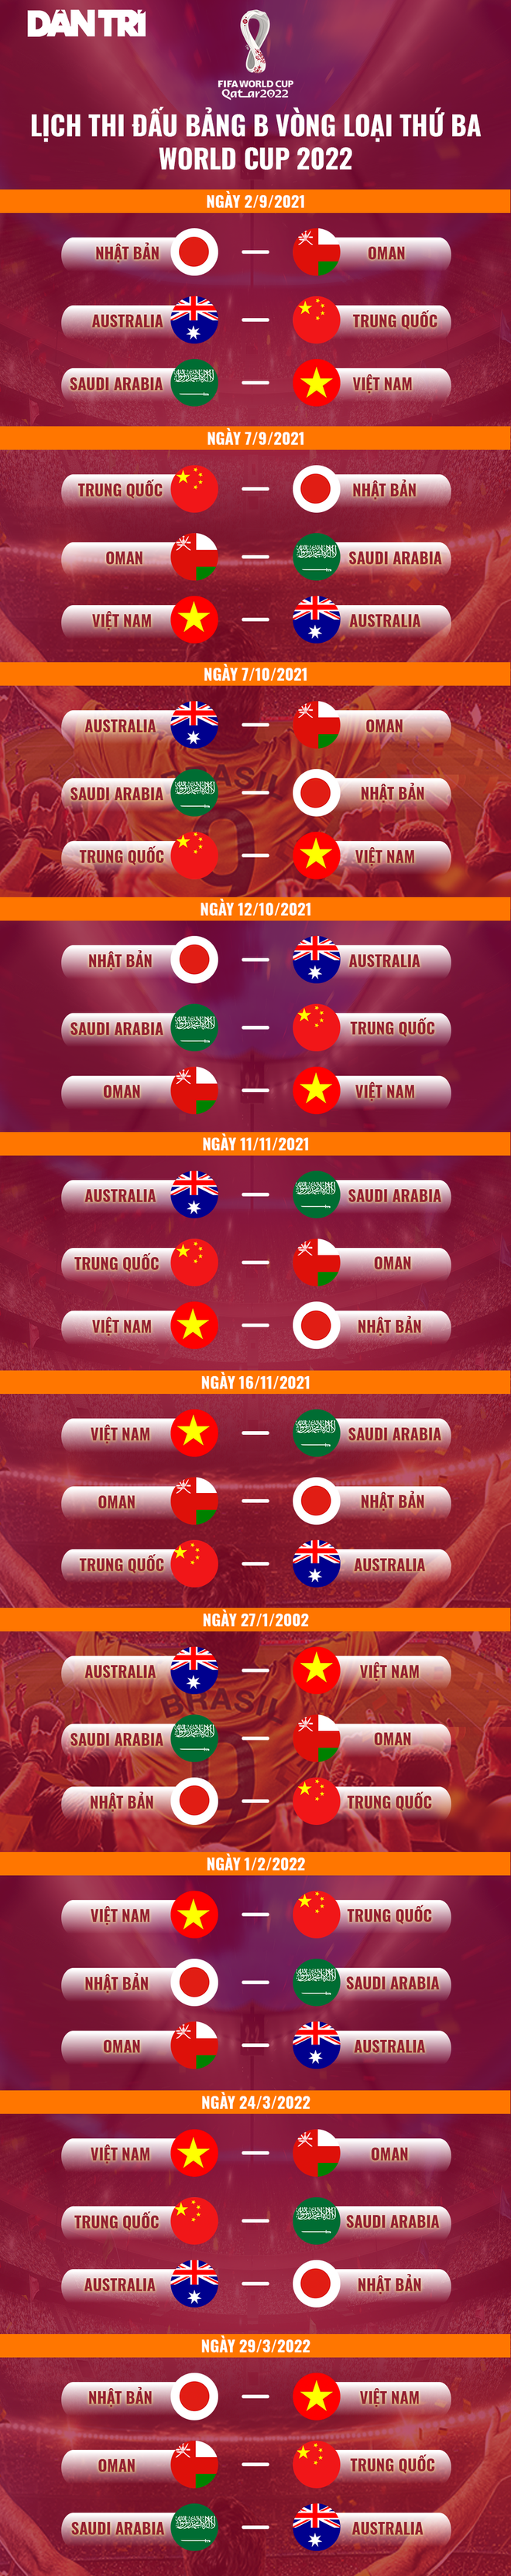 Đội tuyển Việt Nam có thể giành điểm truớc khi đối đầu Trung Quốc? - 4